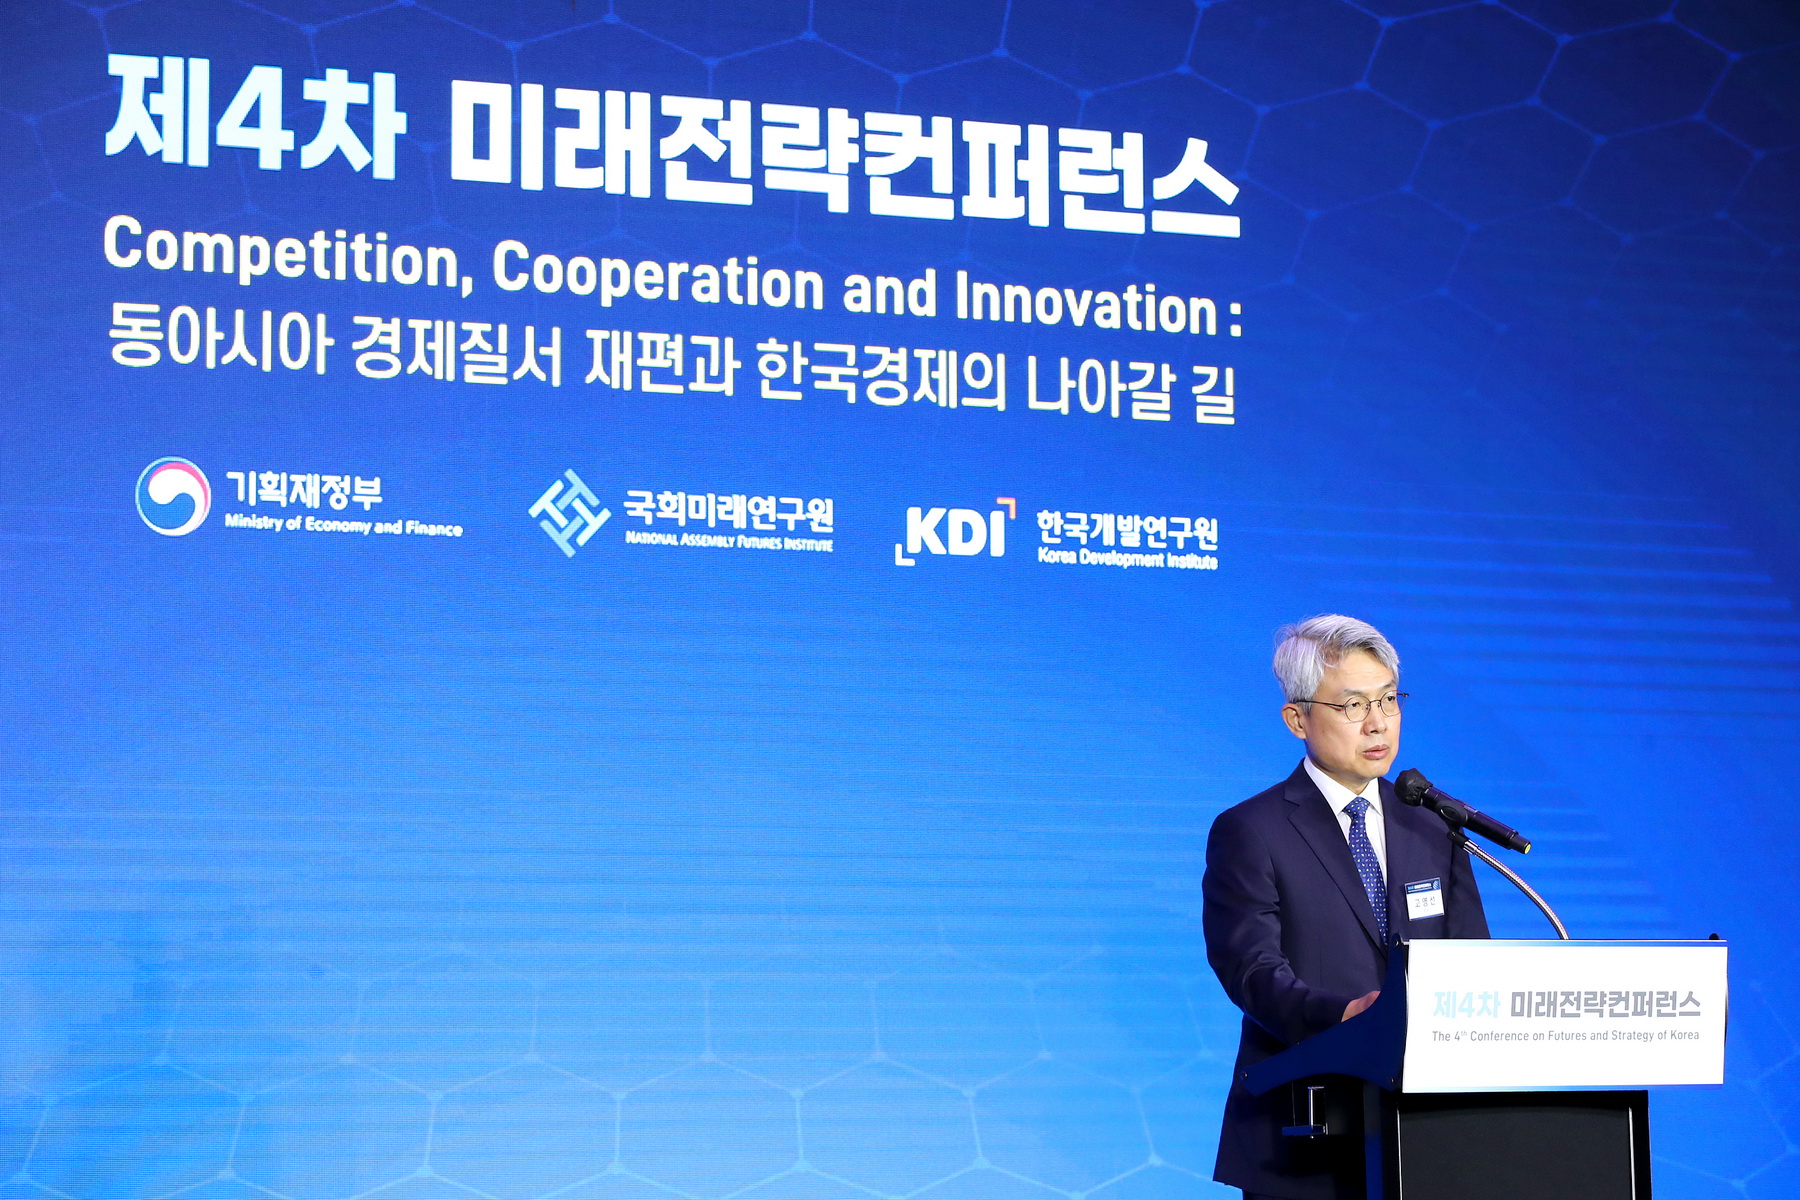 [09.07] 제4회 미래전략 컨퍼런스 - 동아시아 경제질서 재편과 한국경제의 나아갈 길5